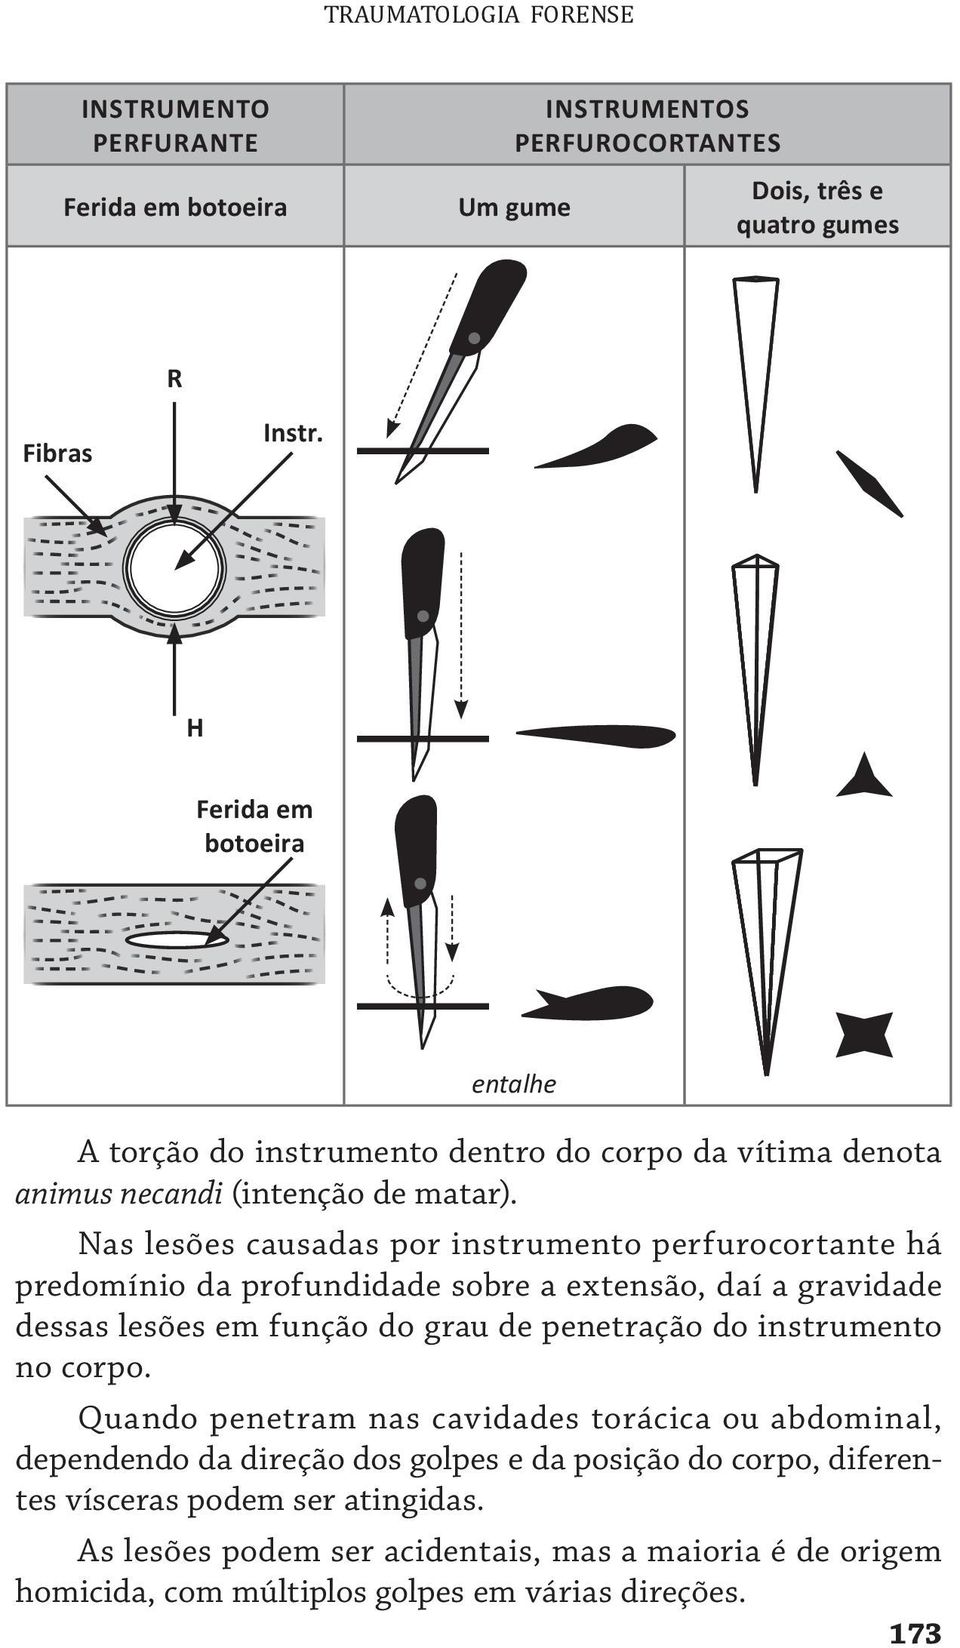 Nas lesões causadas por instrumento perfurocortante há predomínio da profundidade sobre a extensão, daí a gravidade dessas lesões em função do grau de penetração do instrumento